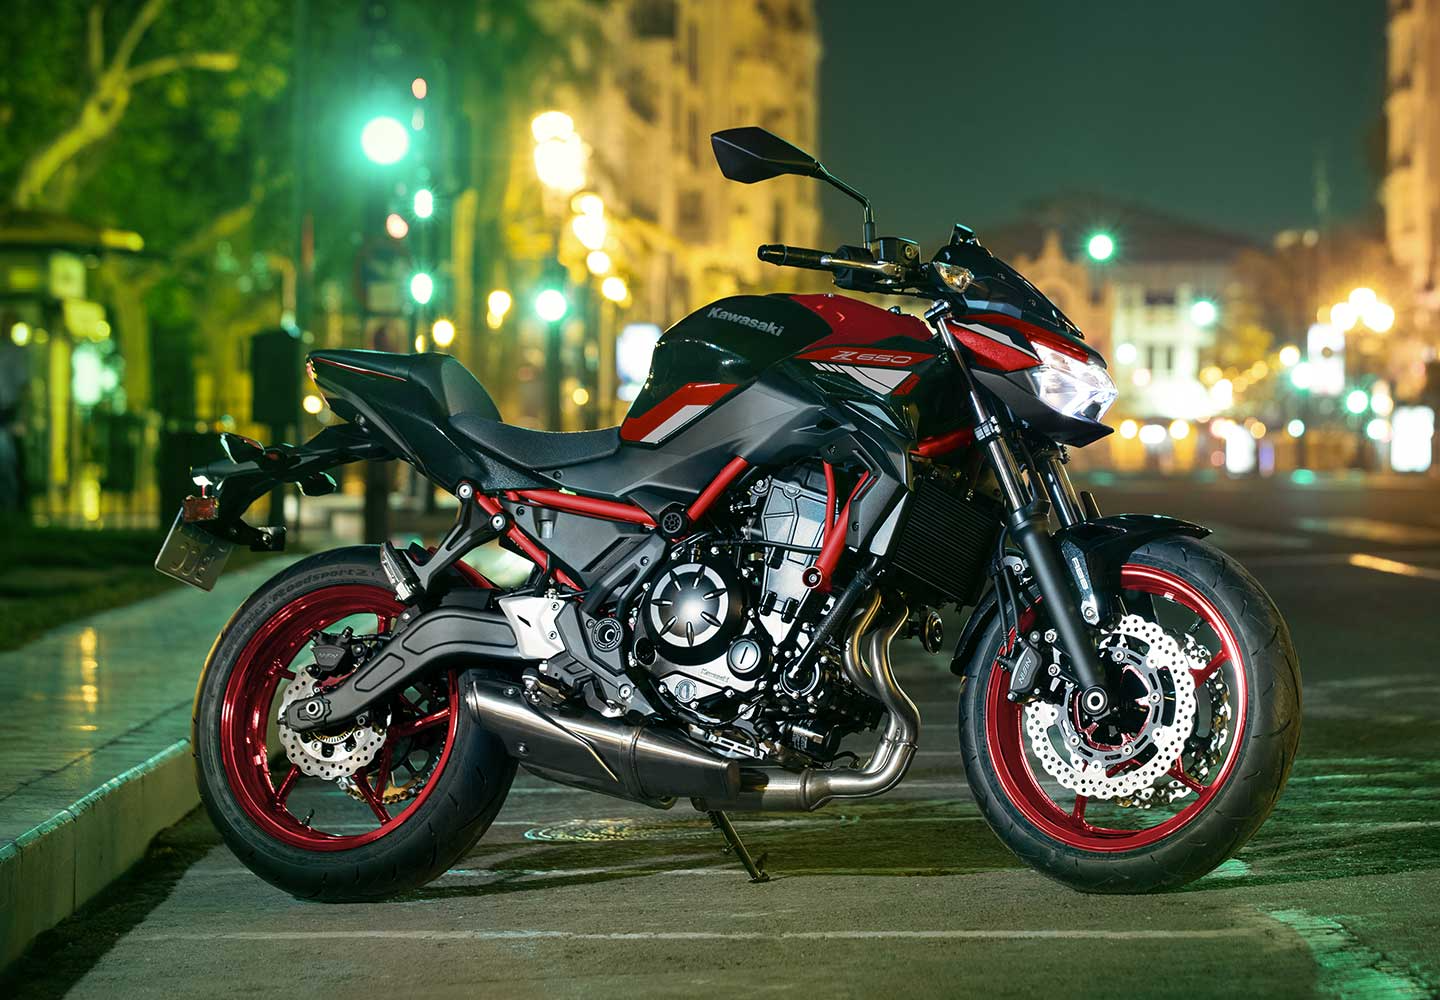 Kawasaki Z650 | Supernaked Motorcycle | Aggressive Versatility